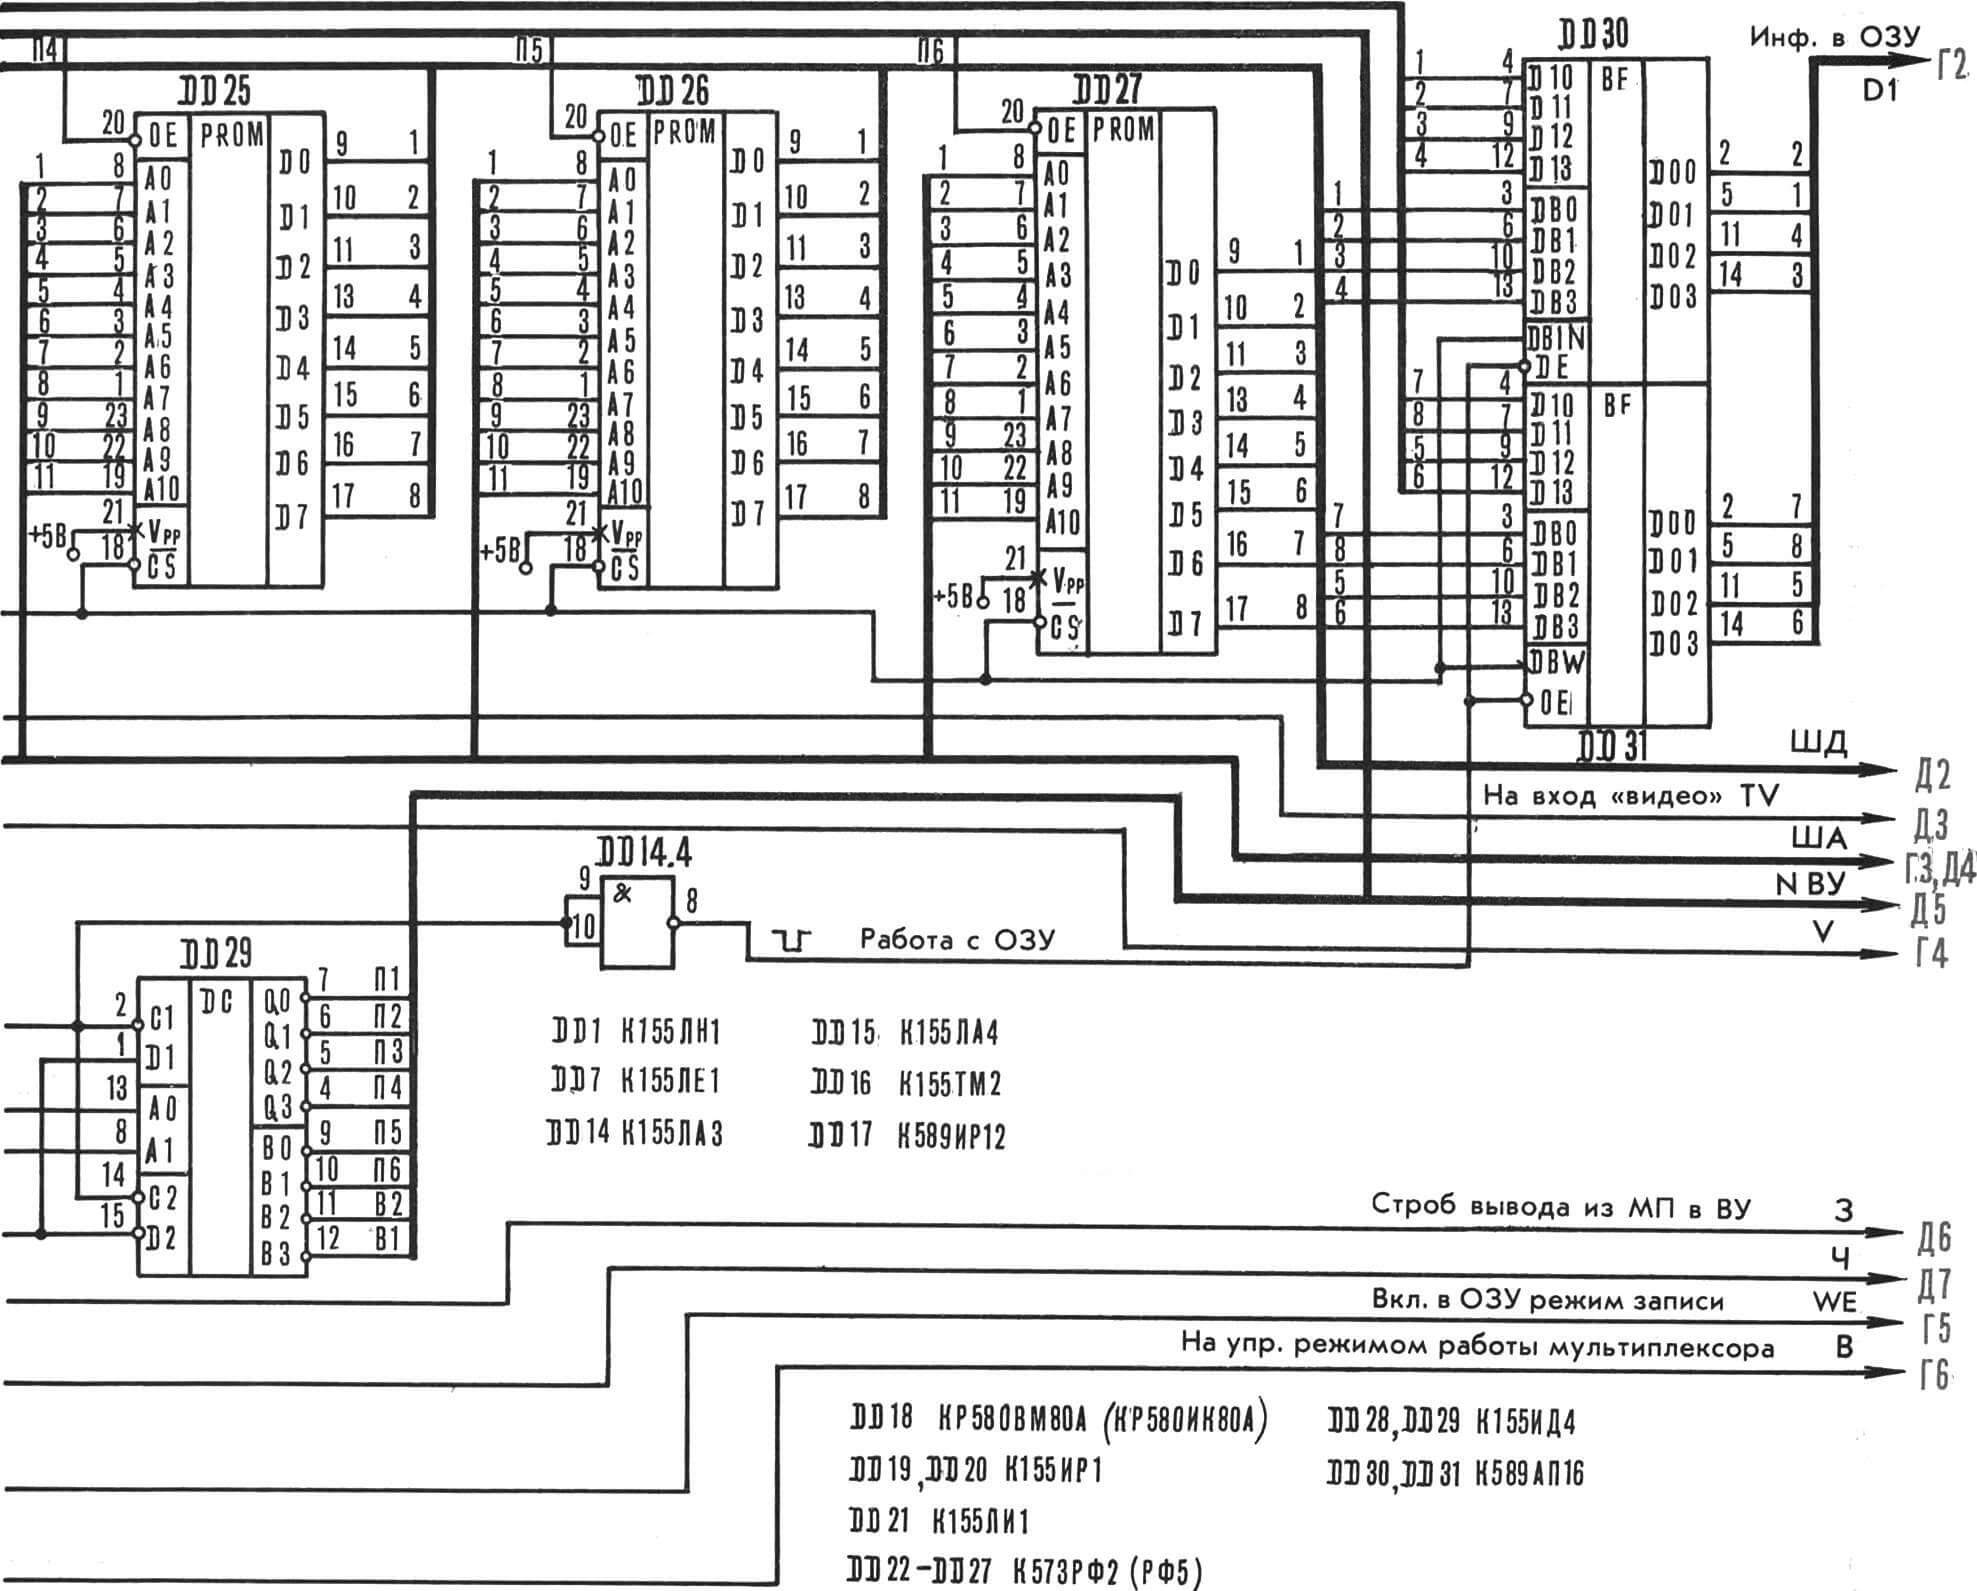 Рис. 6. Принципиальная схема узла, состоящего из центрального процессора, дешифраторов и ППЗУ. (Провода с индексом А соединить с соответствующими проводами на рис. 2, «М-К» 1991 г., № 1; с индексом Д — на рис. 9, «М-К» 1991 г., № 3.)